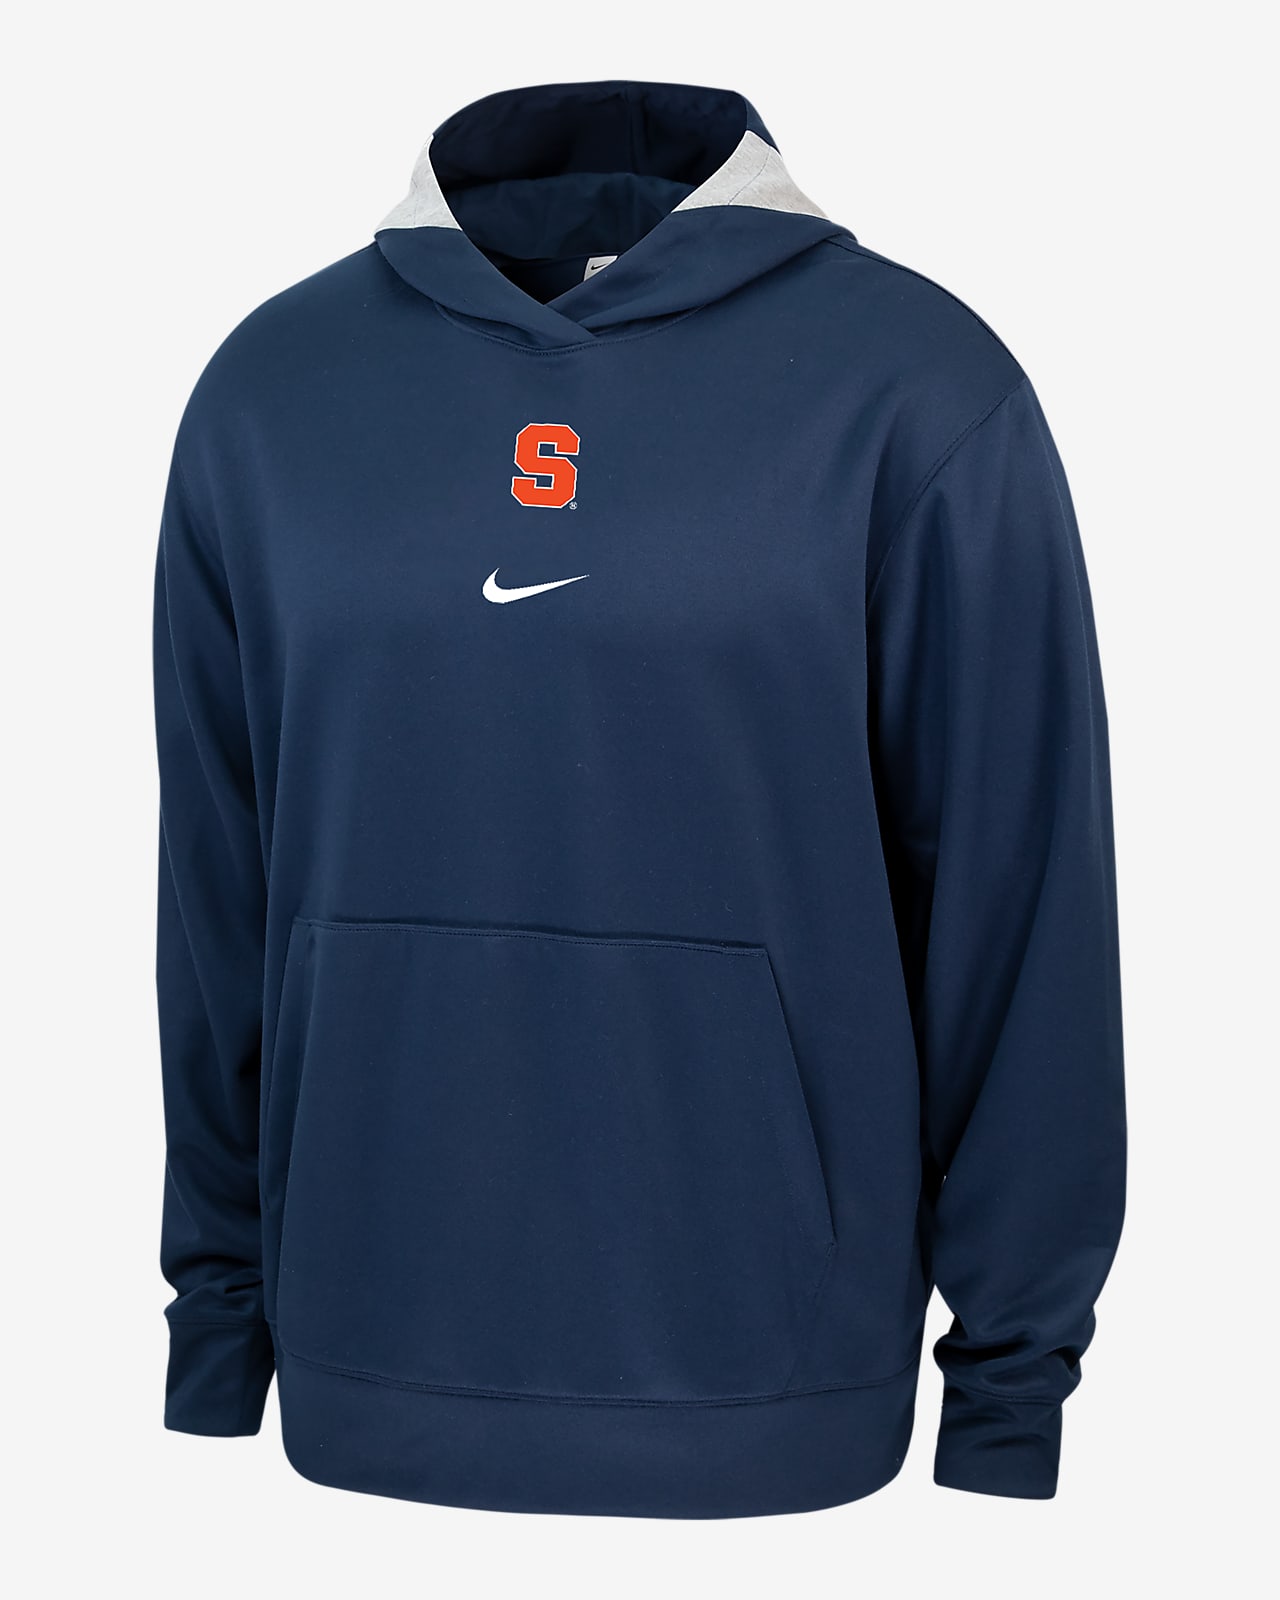 Syracuse Spotlight Men's Nike College Hoodie